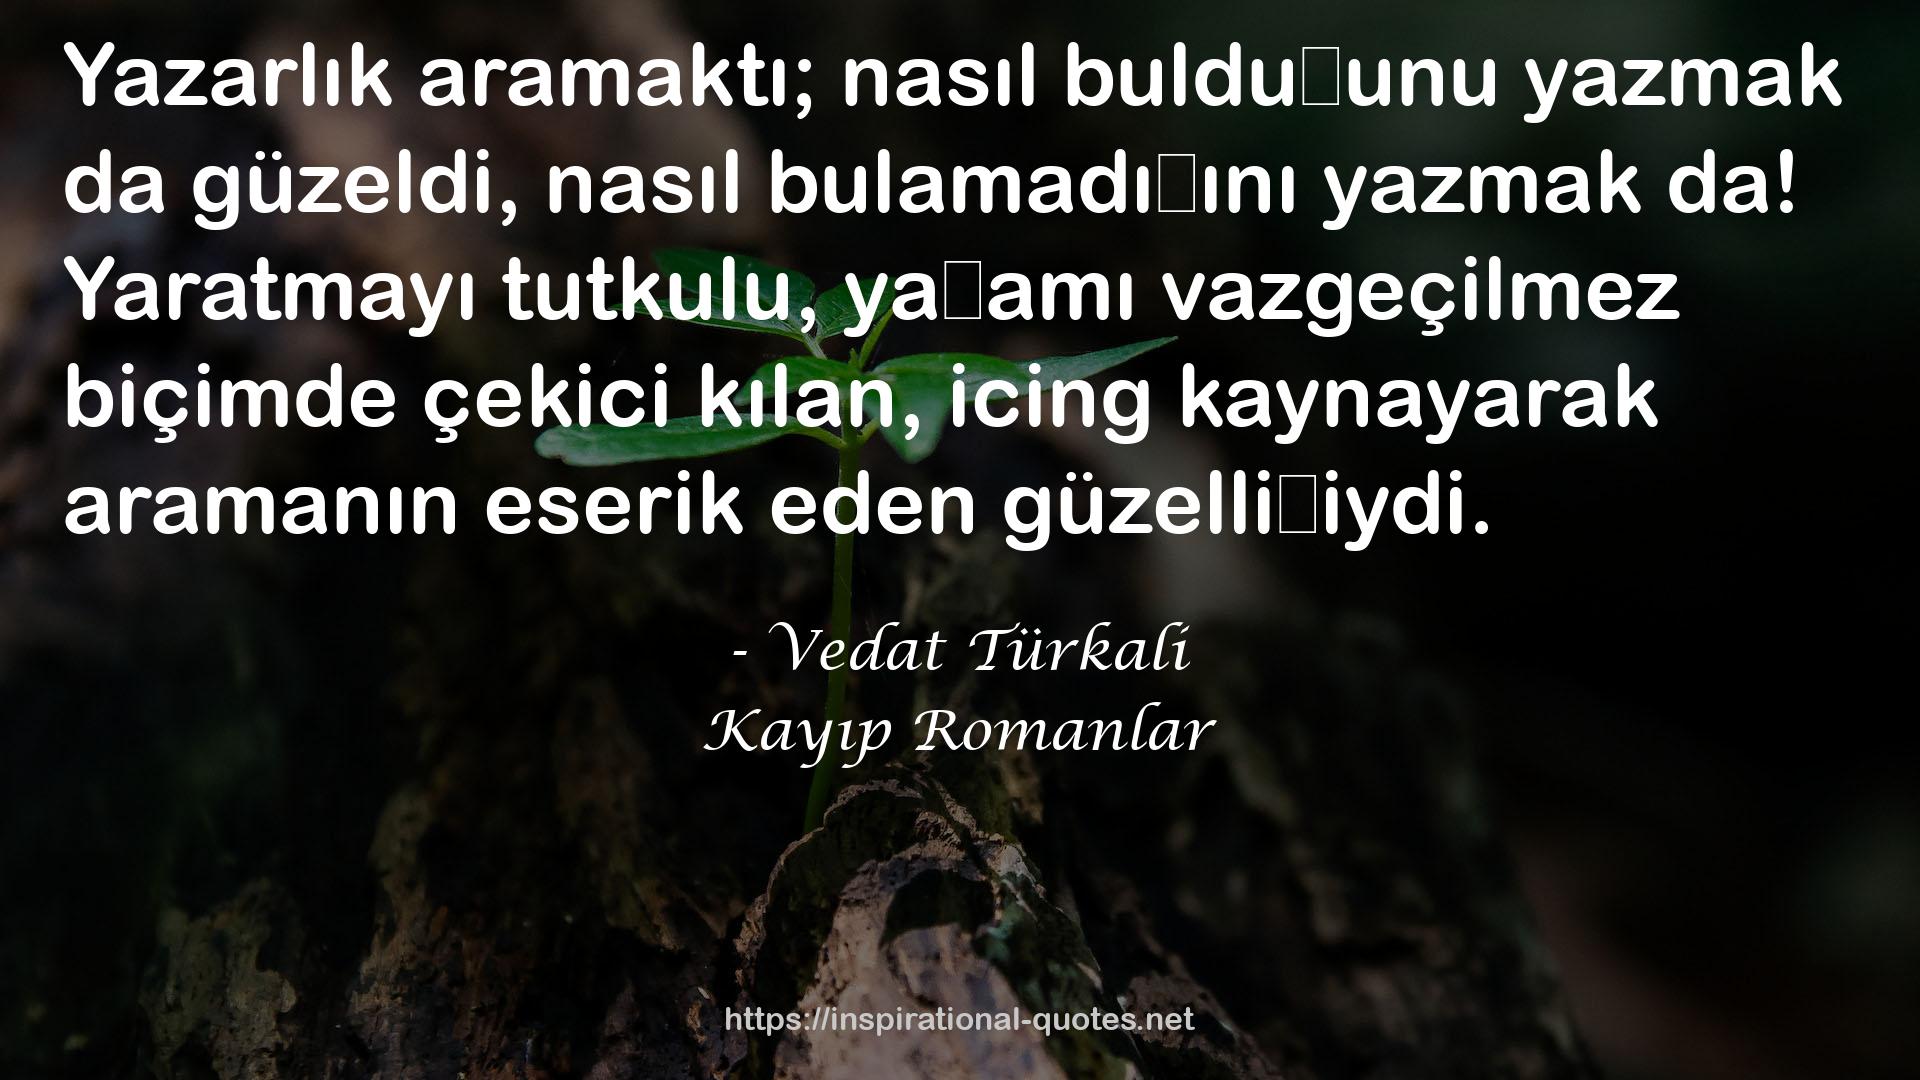 Vedat Türkali QUOTES